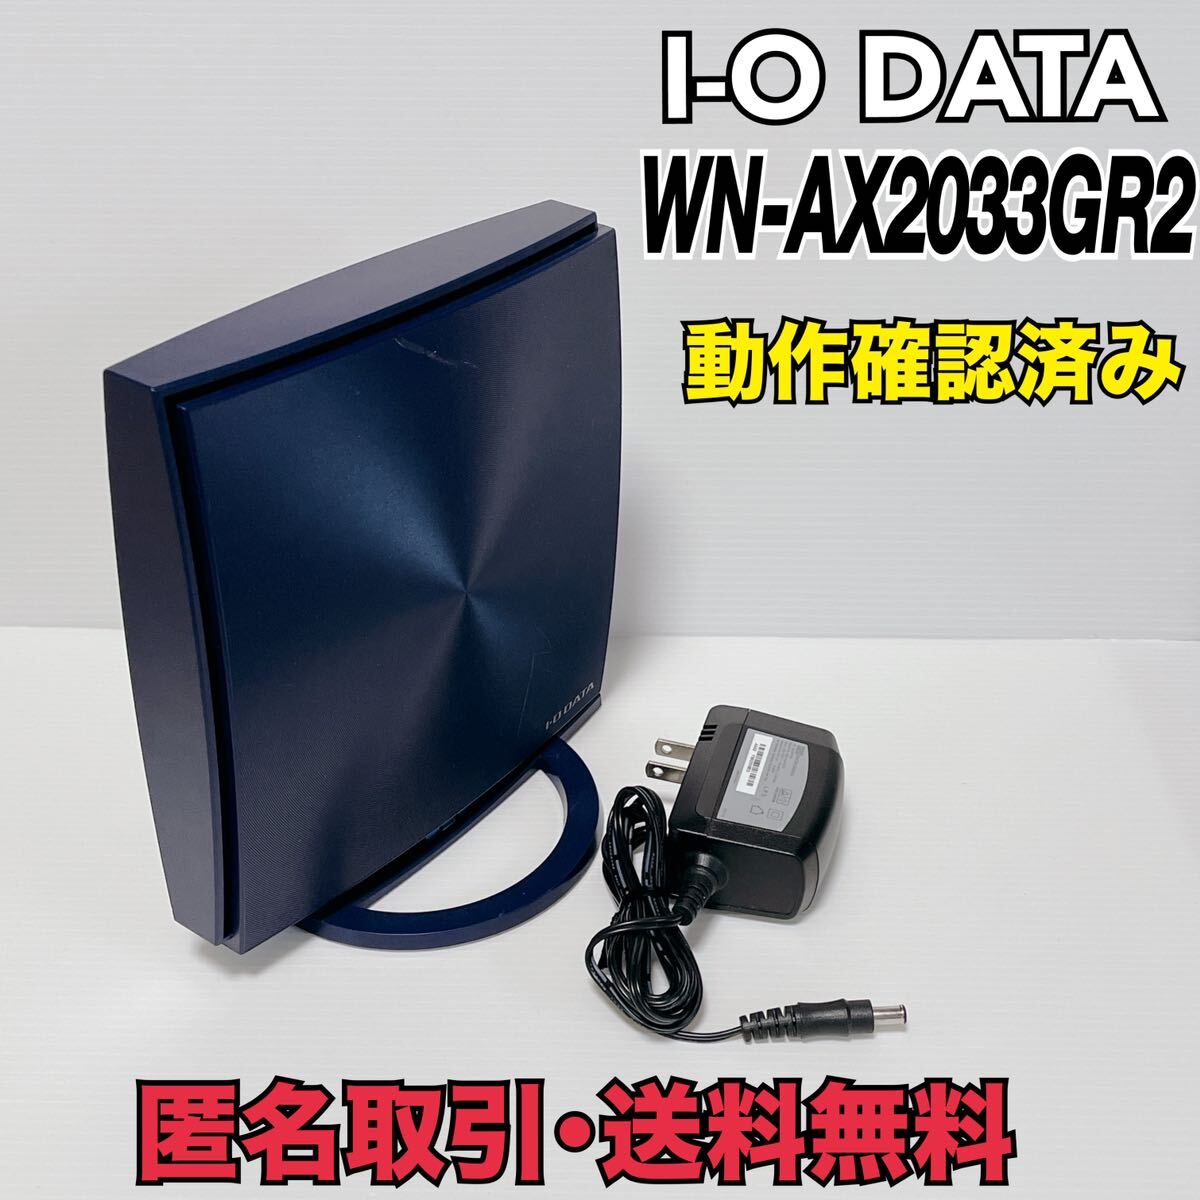 ★匿名取引・送料無料　I-O DATA 無線LAN ルーター WN-AX2033GR2